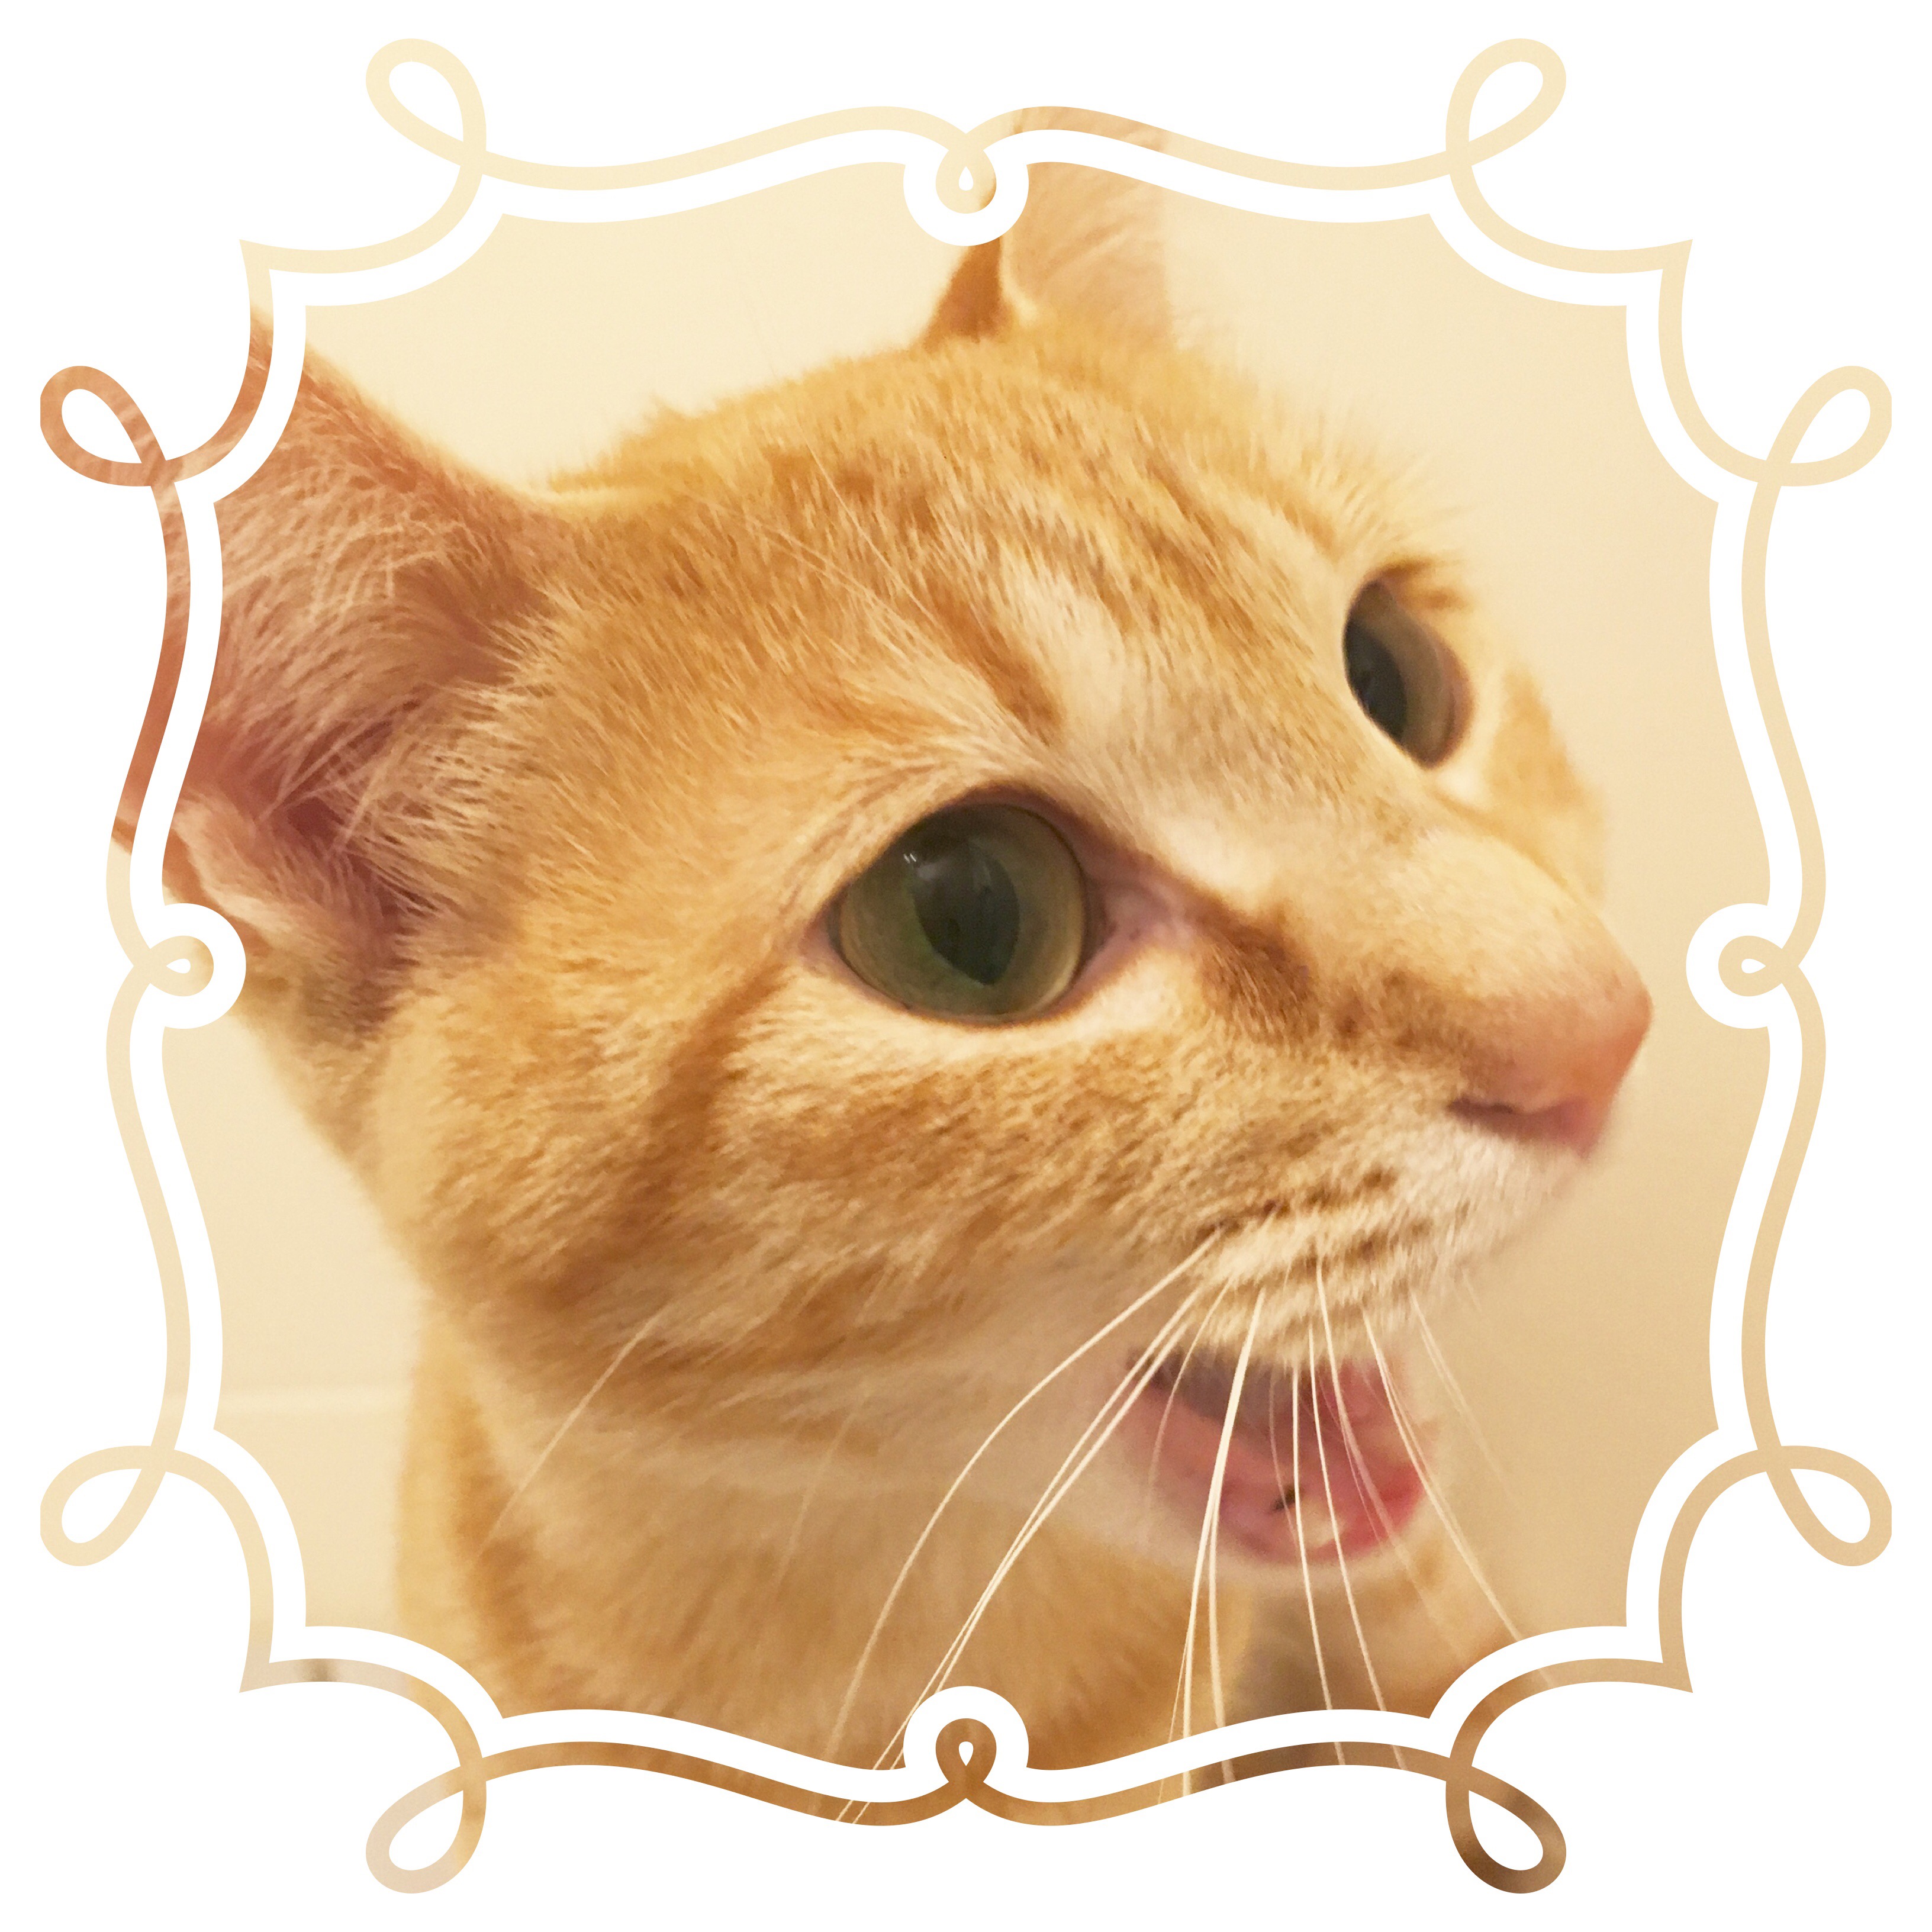 ラ様の愛猫「ちくわ」の顔写真